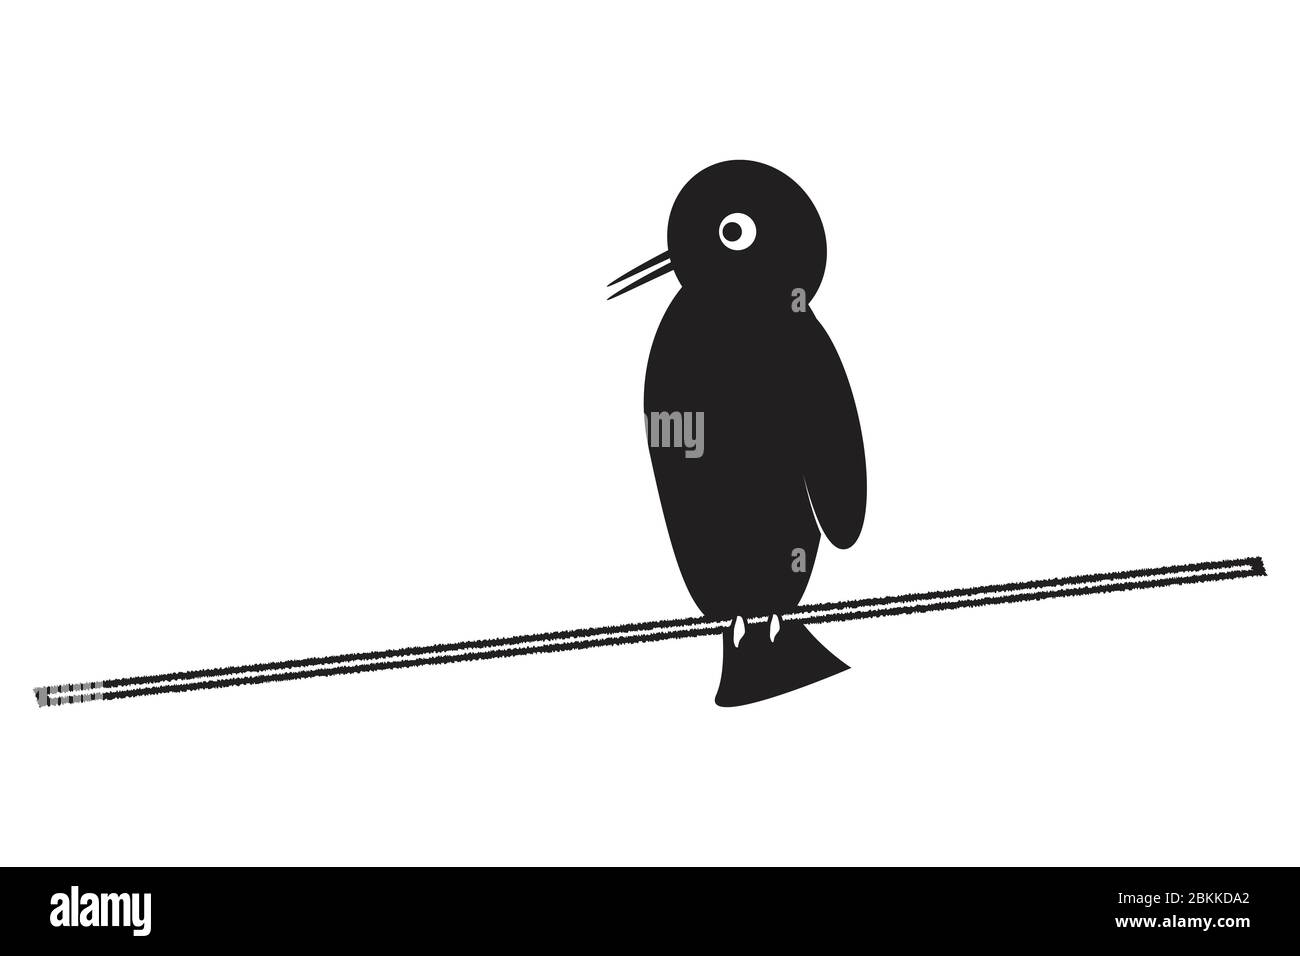 Pictogramme d'un oiseau de bande dessinée assis sur l'illustration de branche de fil de bâton isolé sur un fond blanc. Vecteur EPS Illustration de Vecteur